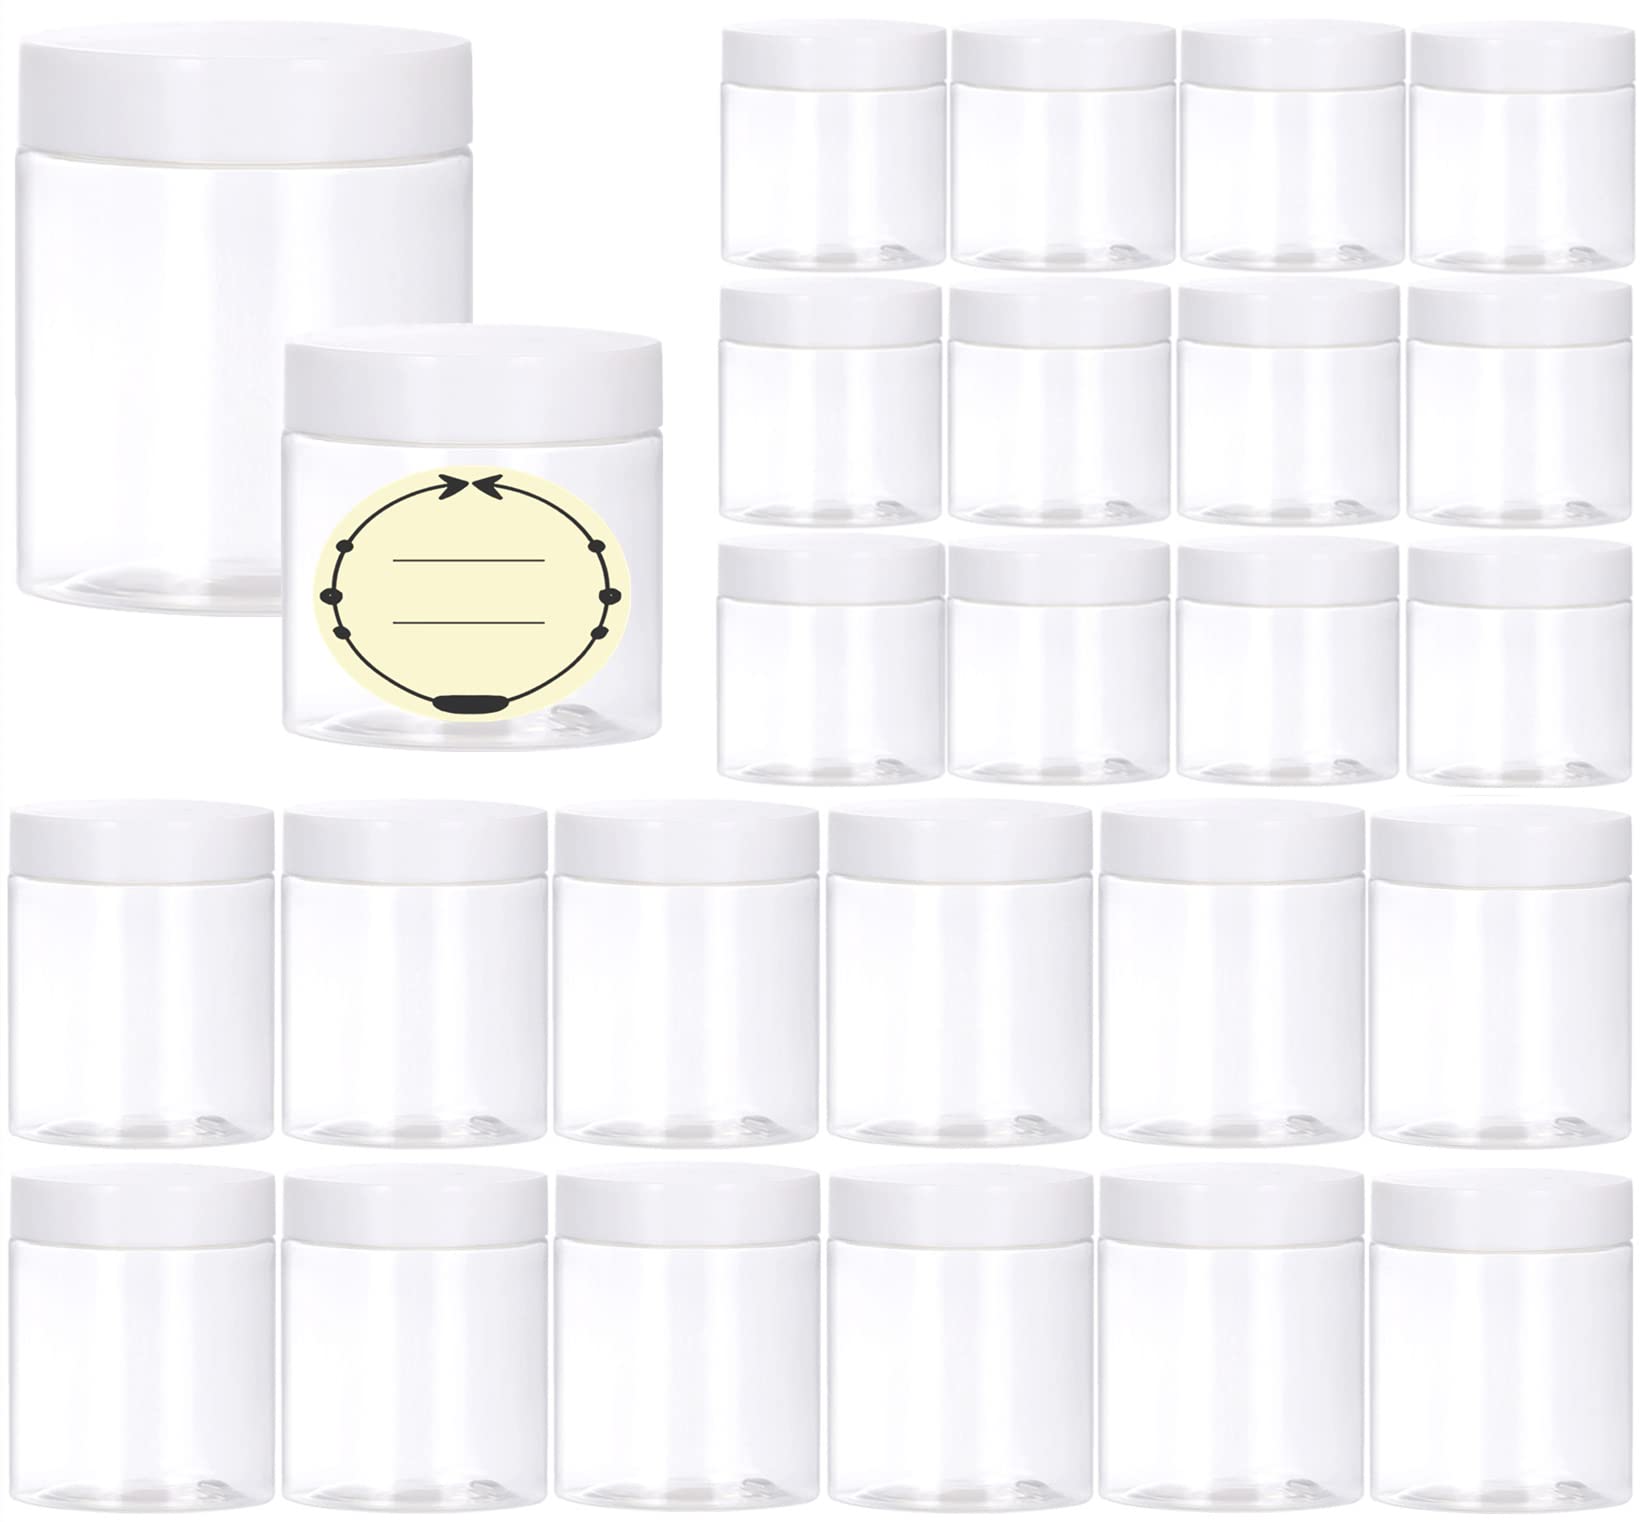 8 Pack Clear 12 oz Plastic Jars with Lids, Jars for Slime for Kids DIY  Crafts